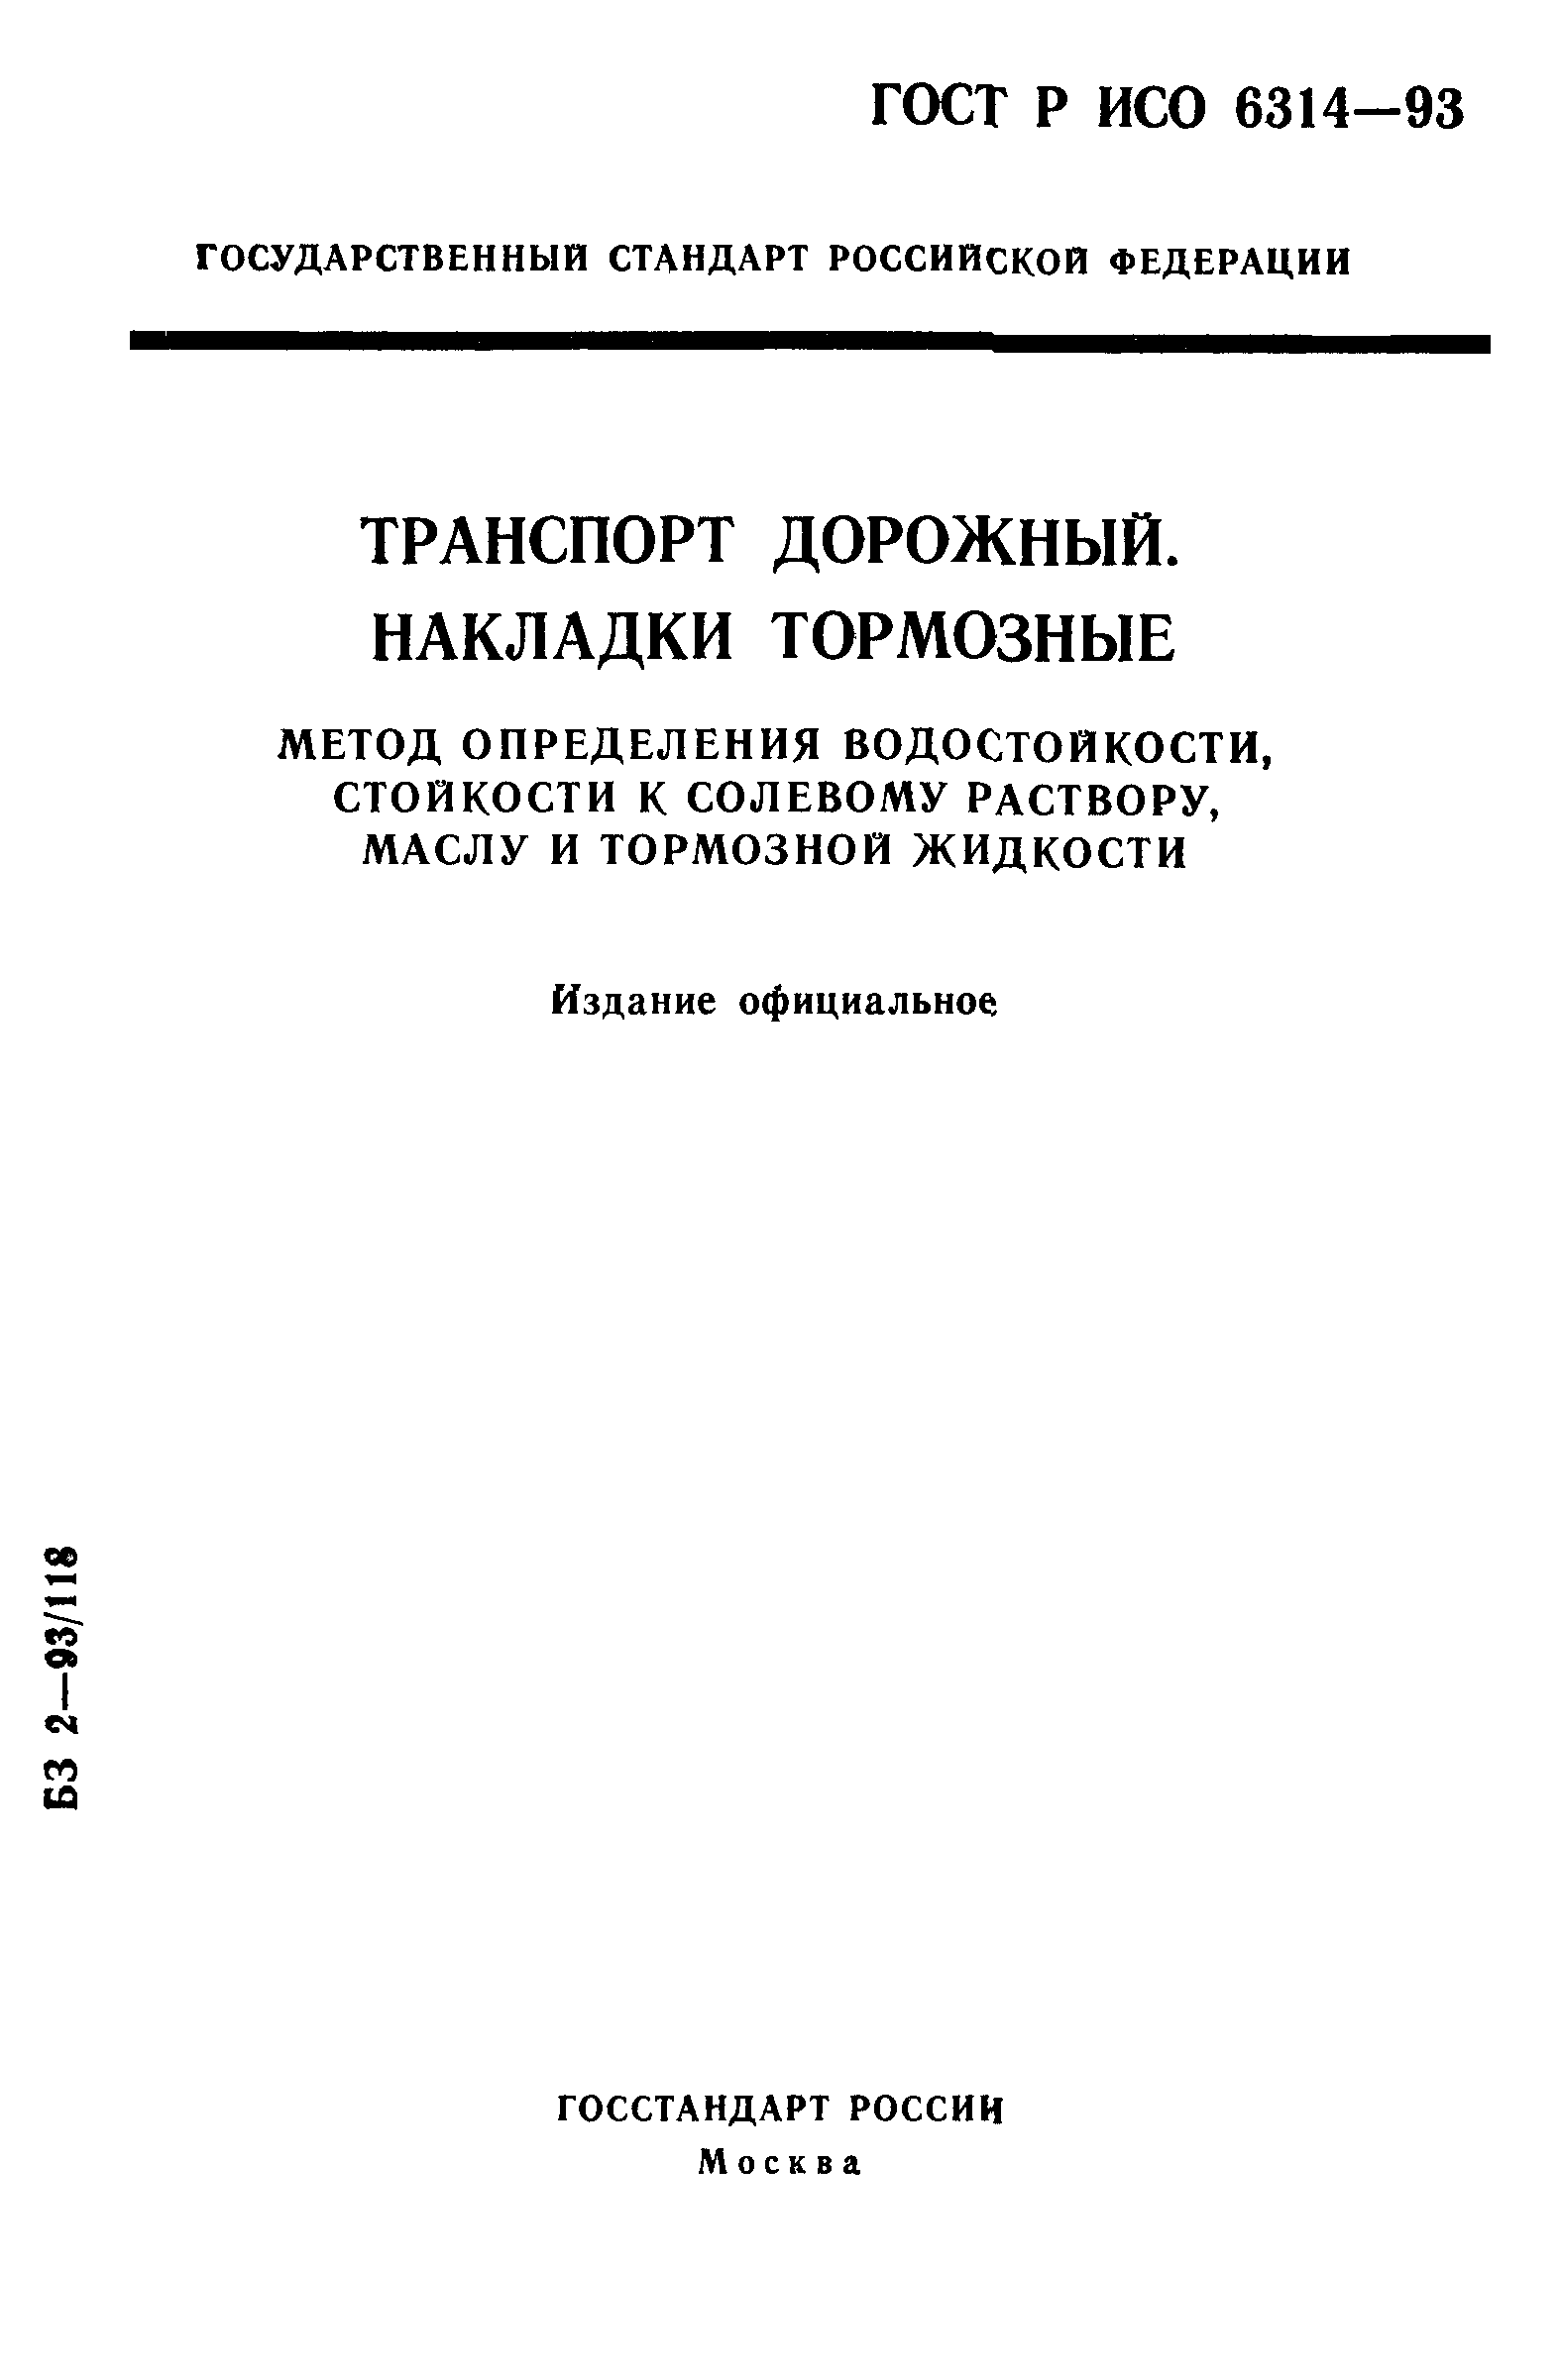 ГОСТ Р ИСО 6314-93